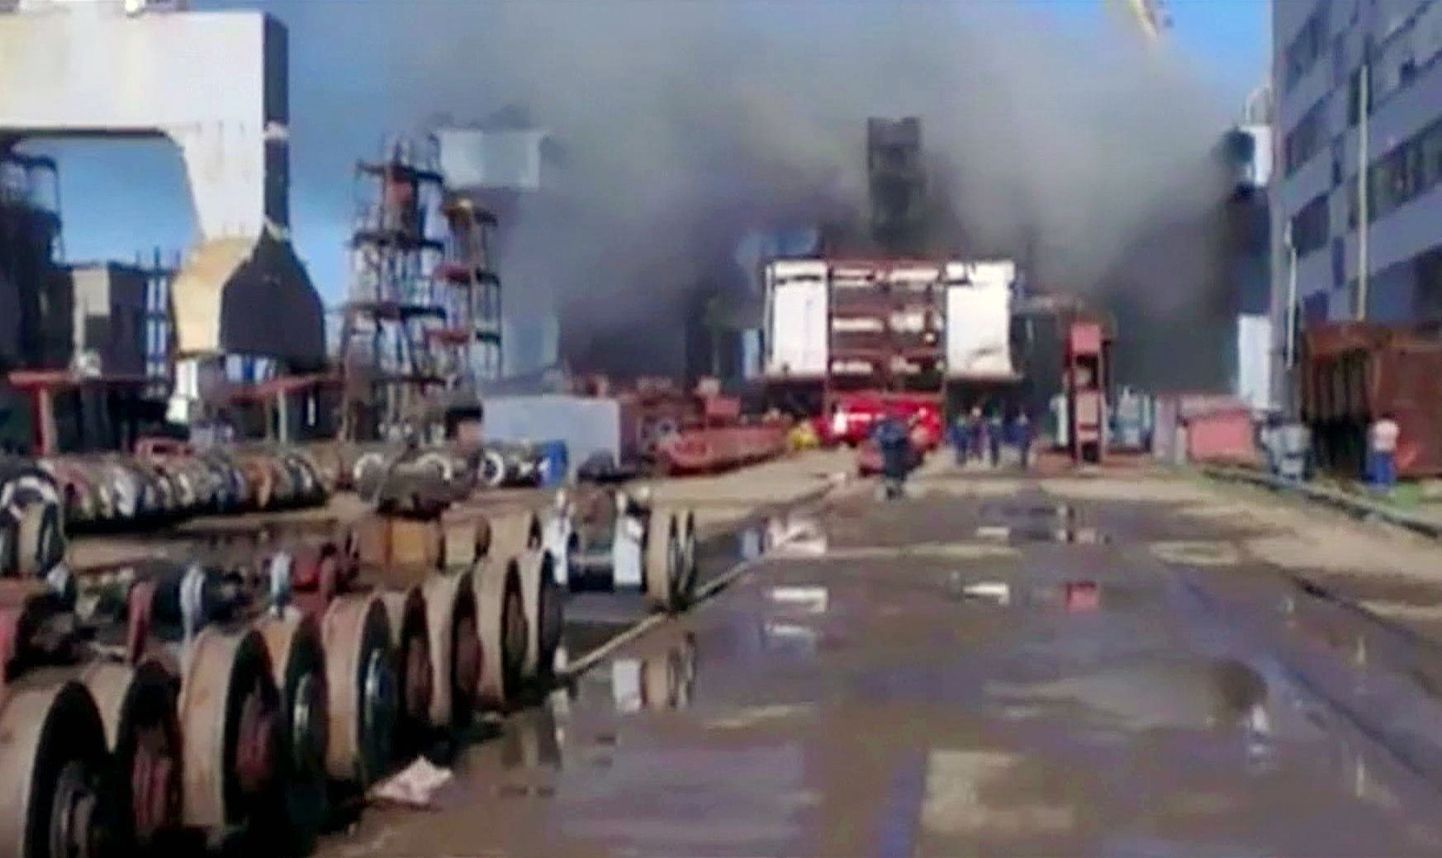 Telekanali PrimeMediaTV video stoppkaadril on näha eilset põlengut Vene tuumaallveelaeval Tomsk.